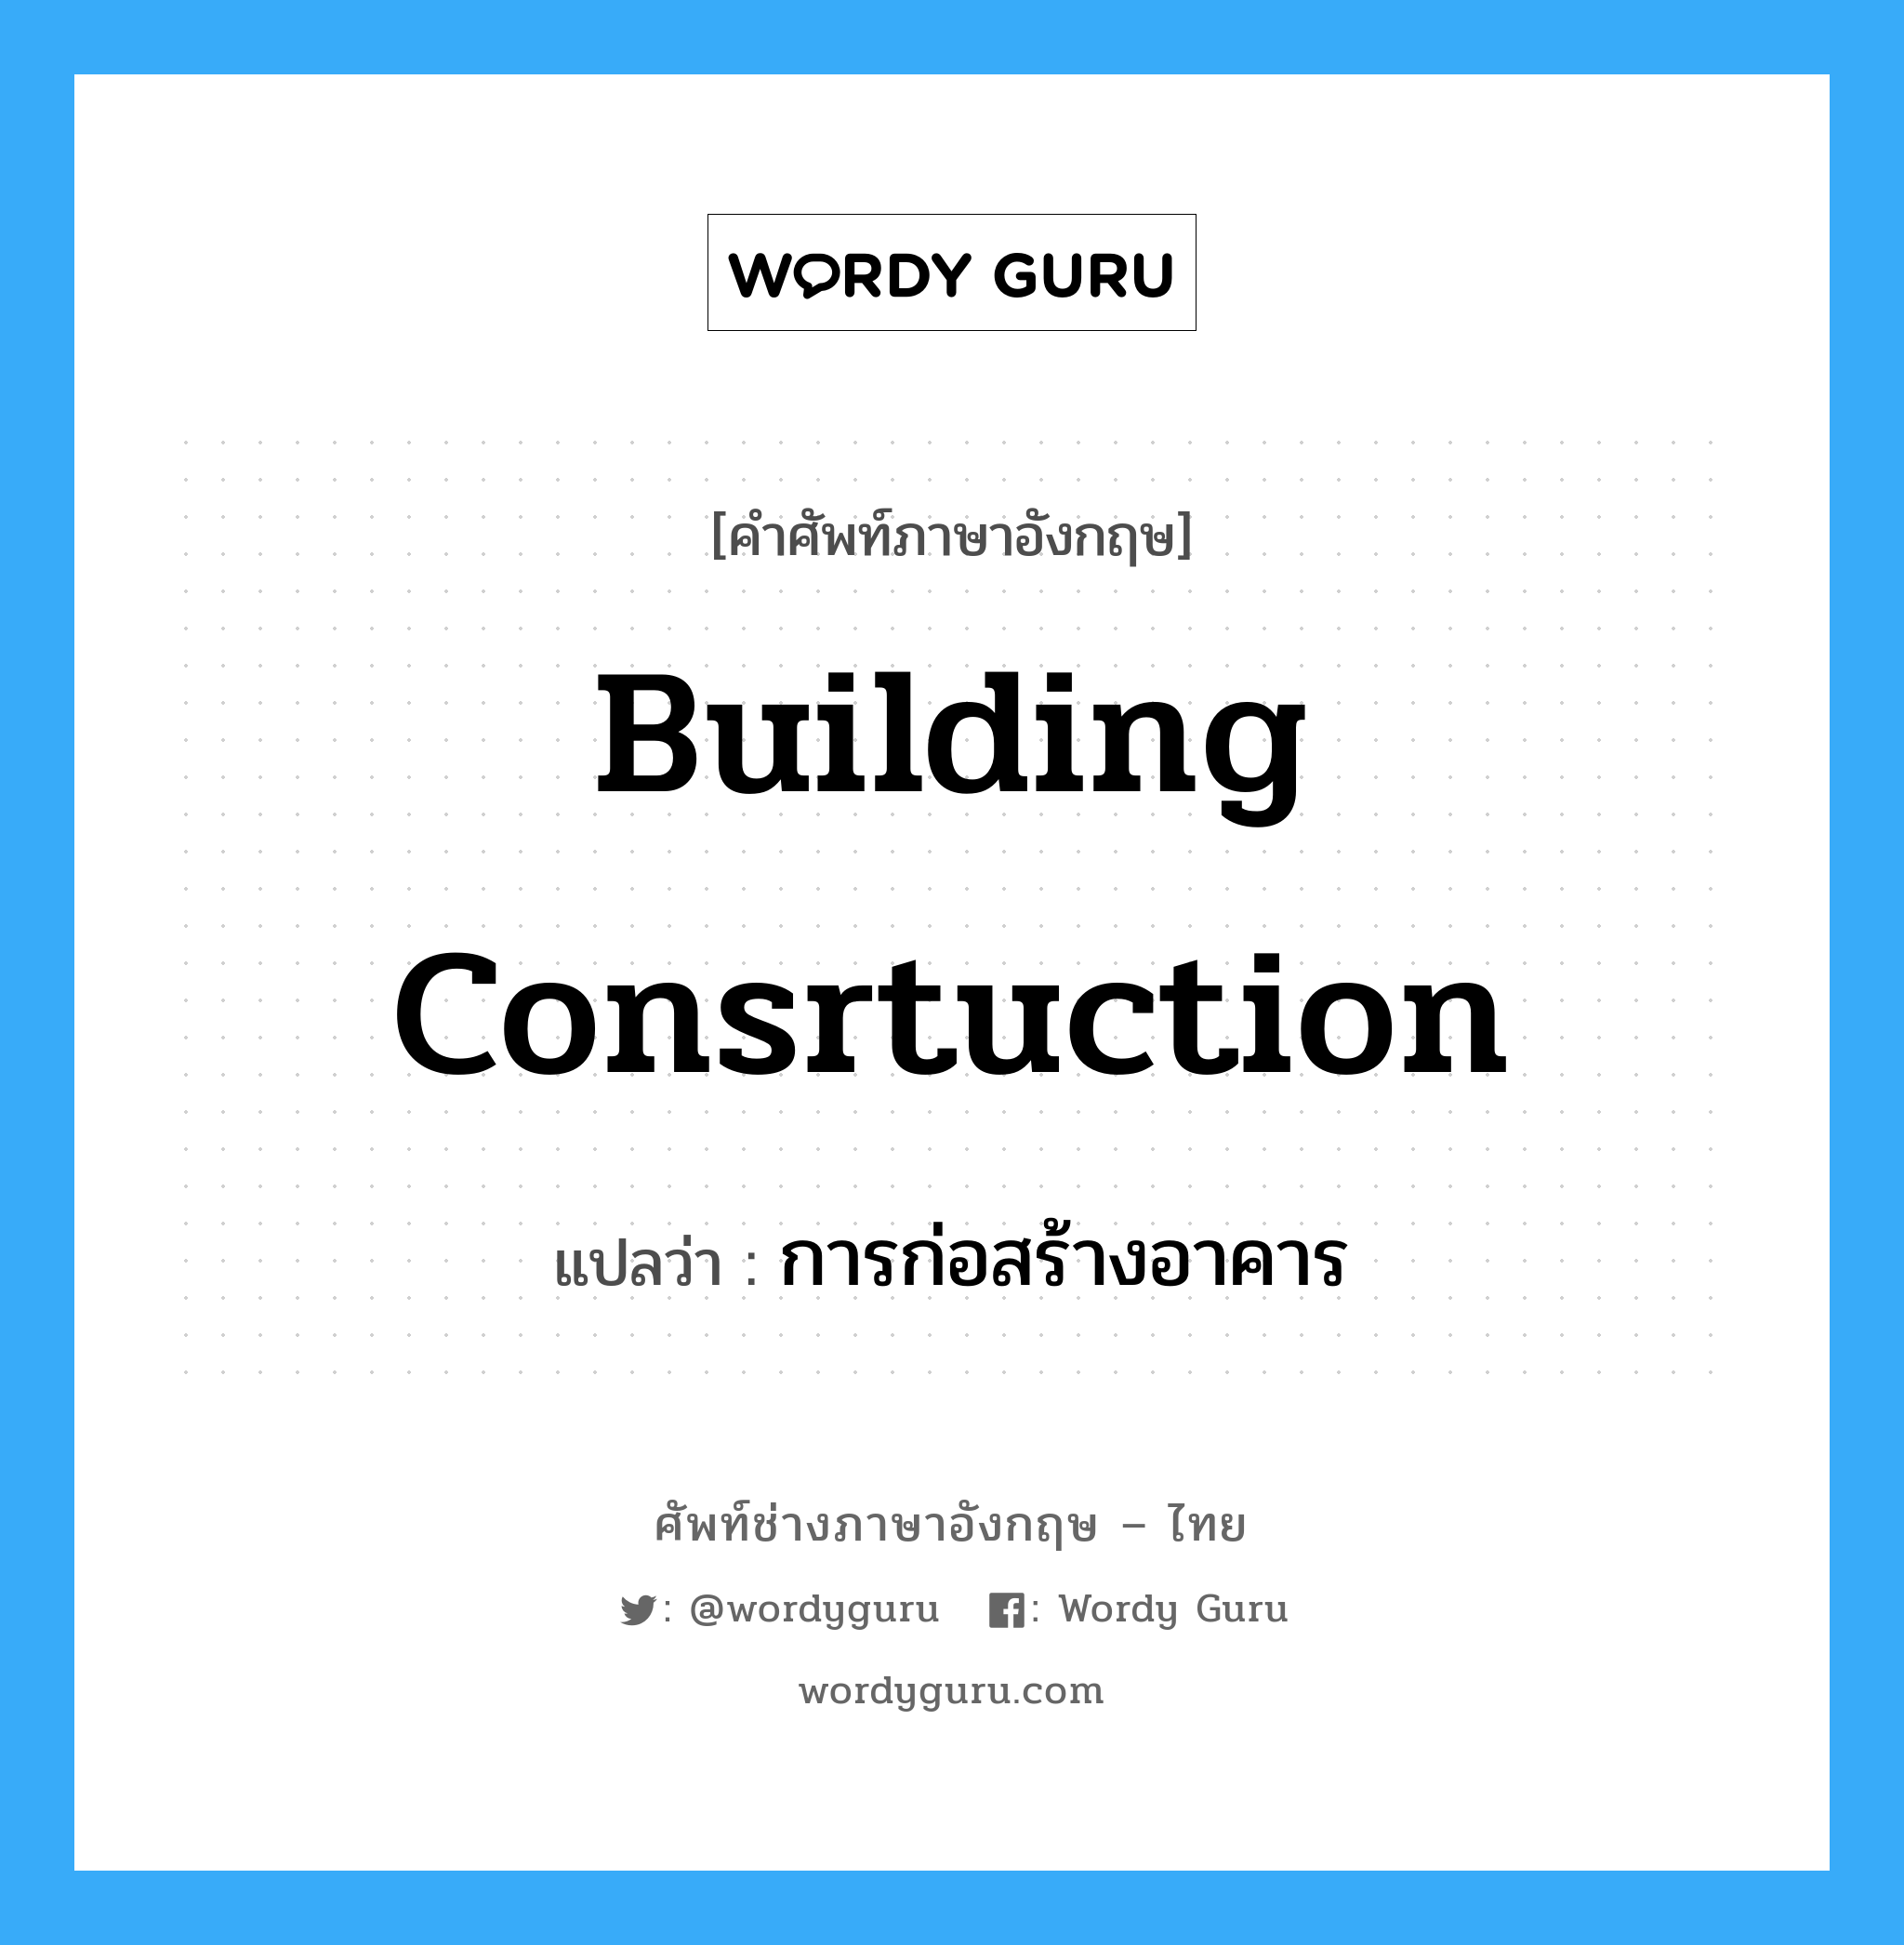 การก่อสร้างอาคาร ภาษาอังกฤษ?, คำศัพท์ช่างภาษาอังกฤษ - ไทย การก่อสร้างอาคาร คำศัพท์ภาษาอังกฤษ การก่อสร้างอาคาร แปลว่า building consrtuction